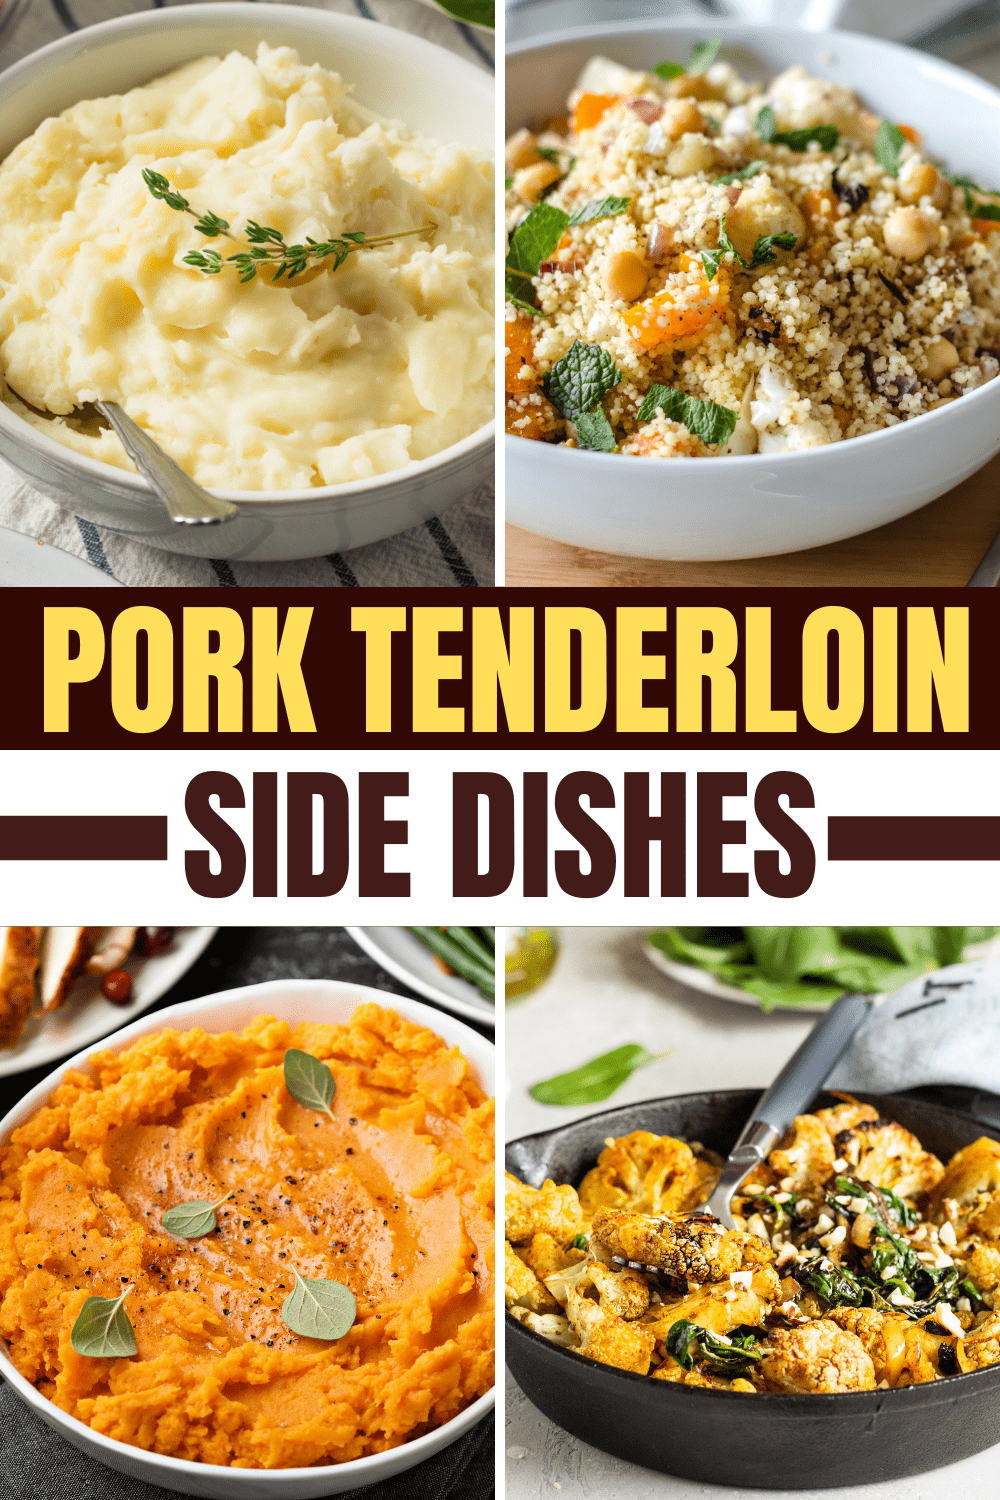 20 Pork Tenderloin Side Dishes (+ Easy Recipes) - Insanely Good